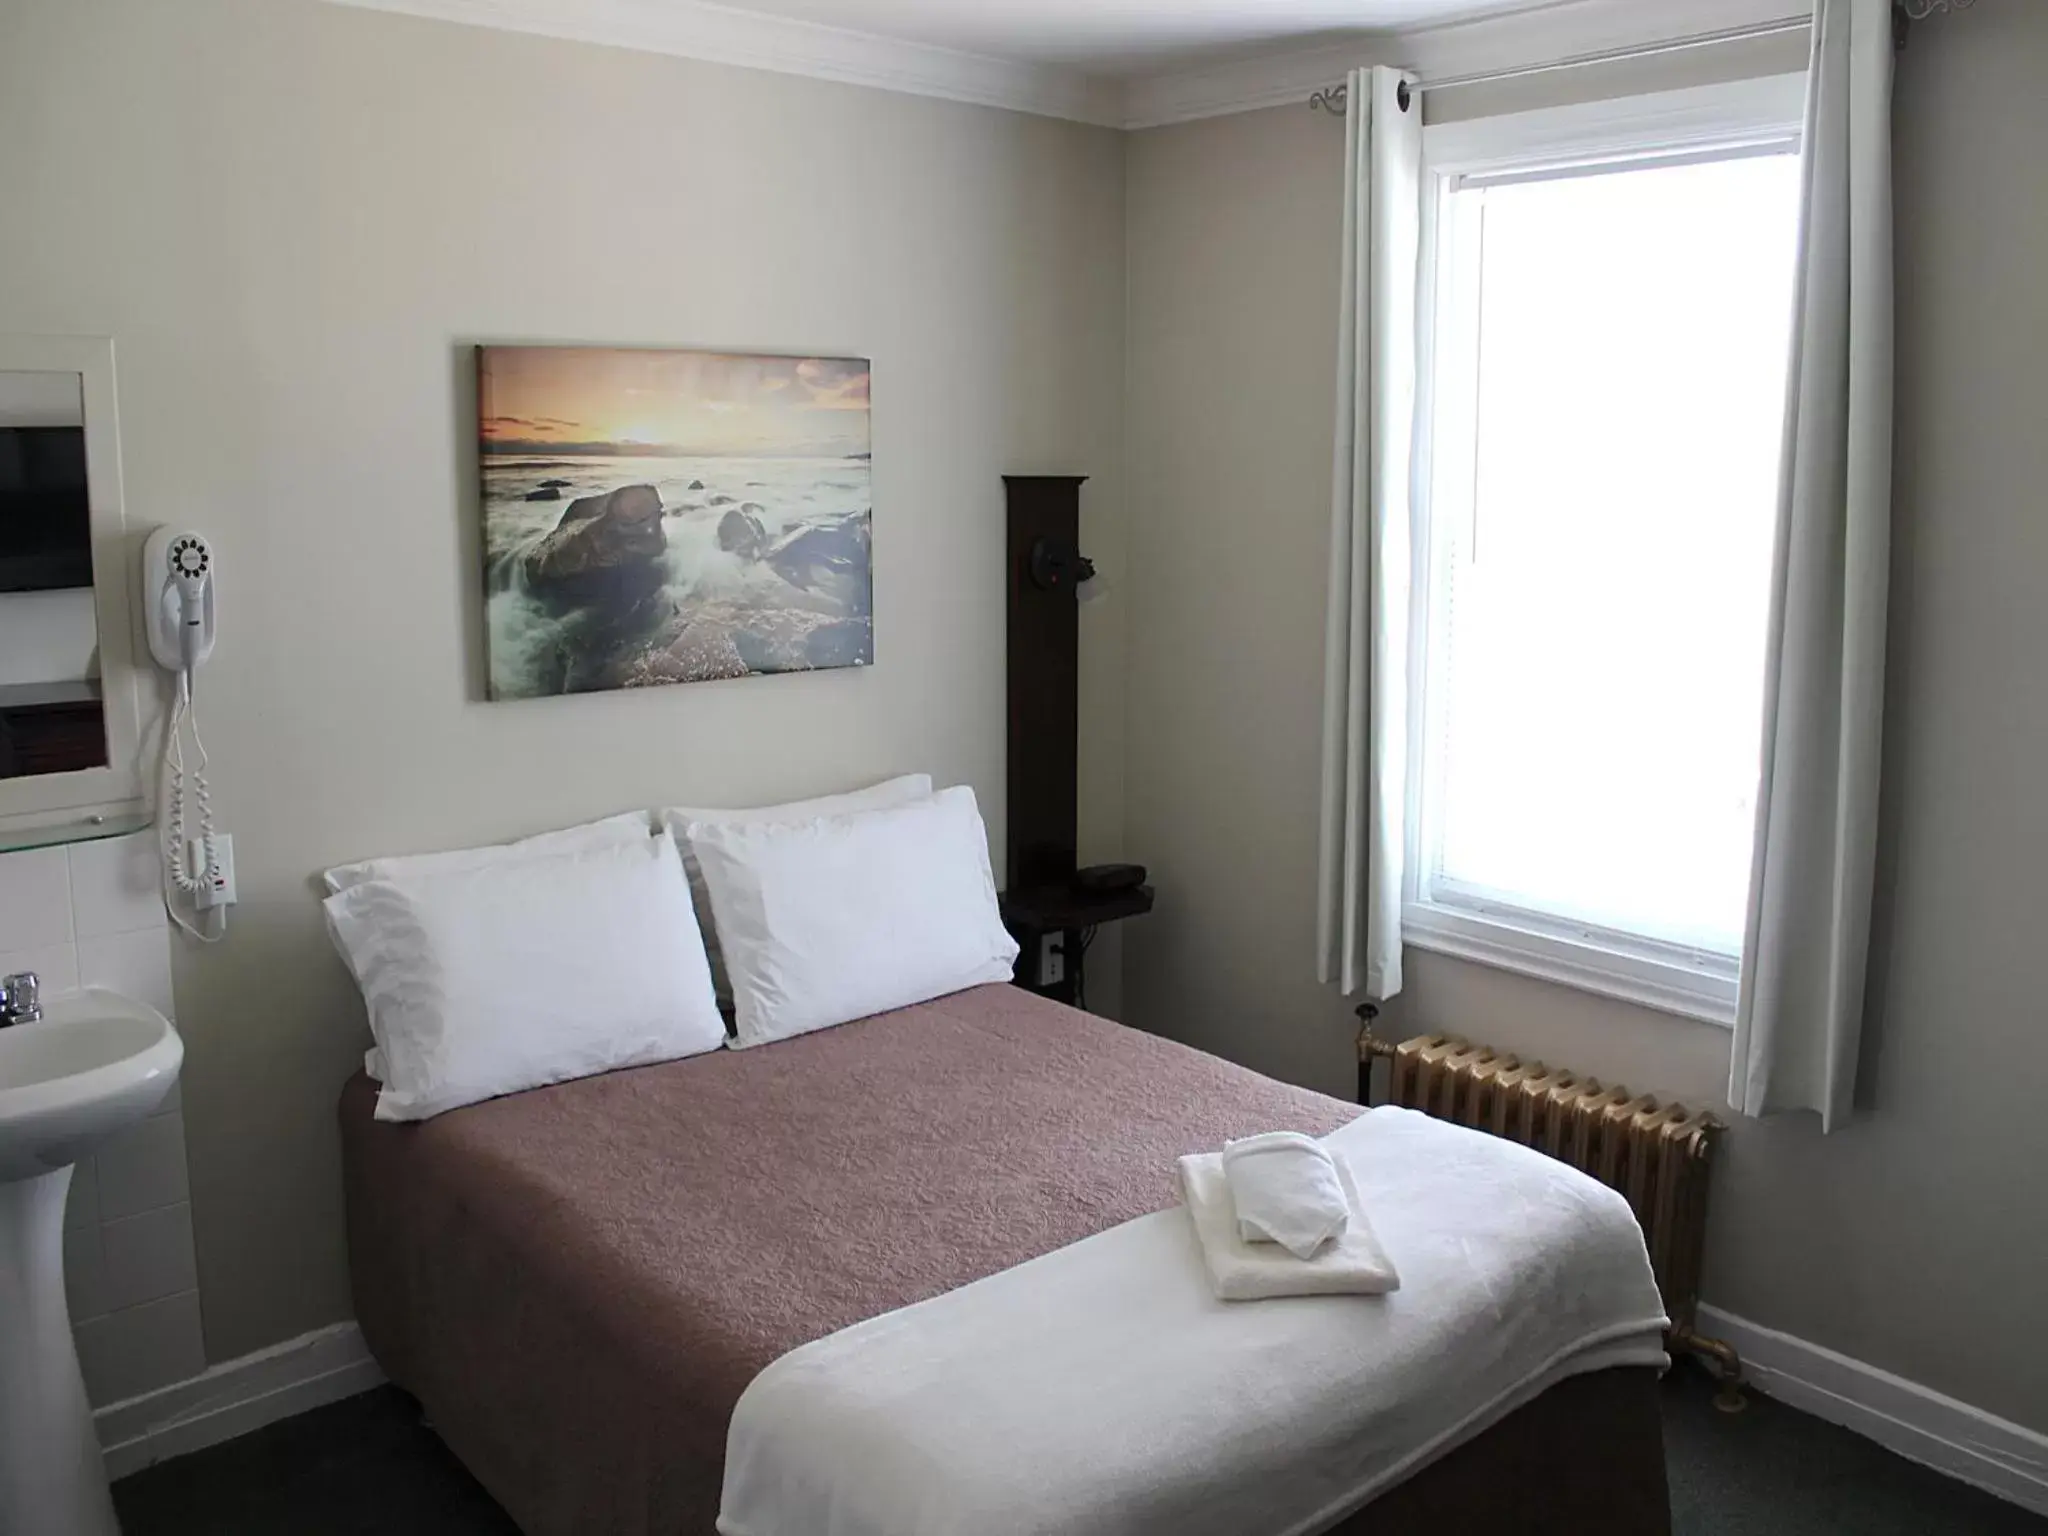 Bedroom, Room Photo in Hotel Auberge Michel Doyon